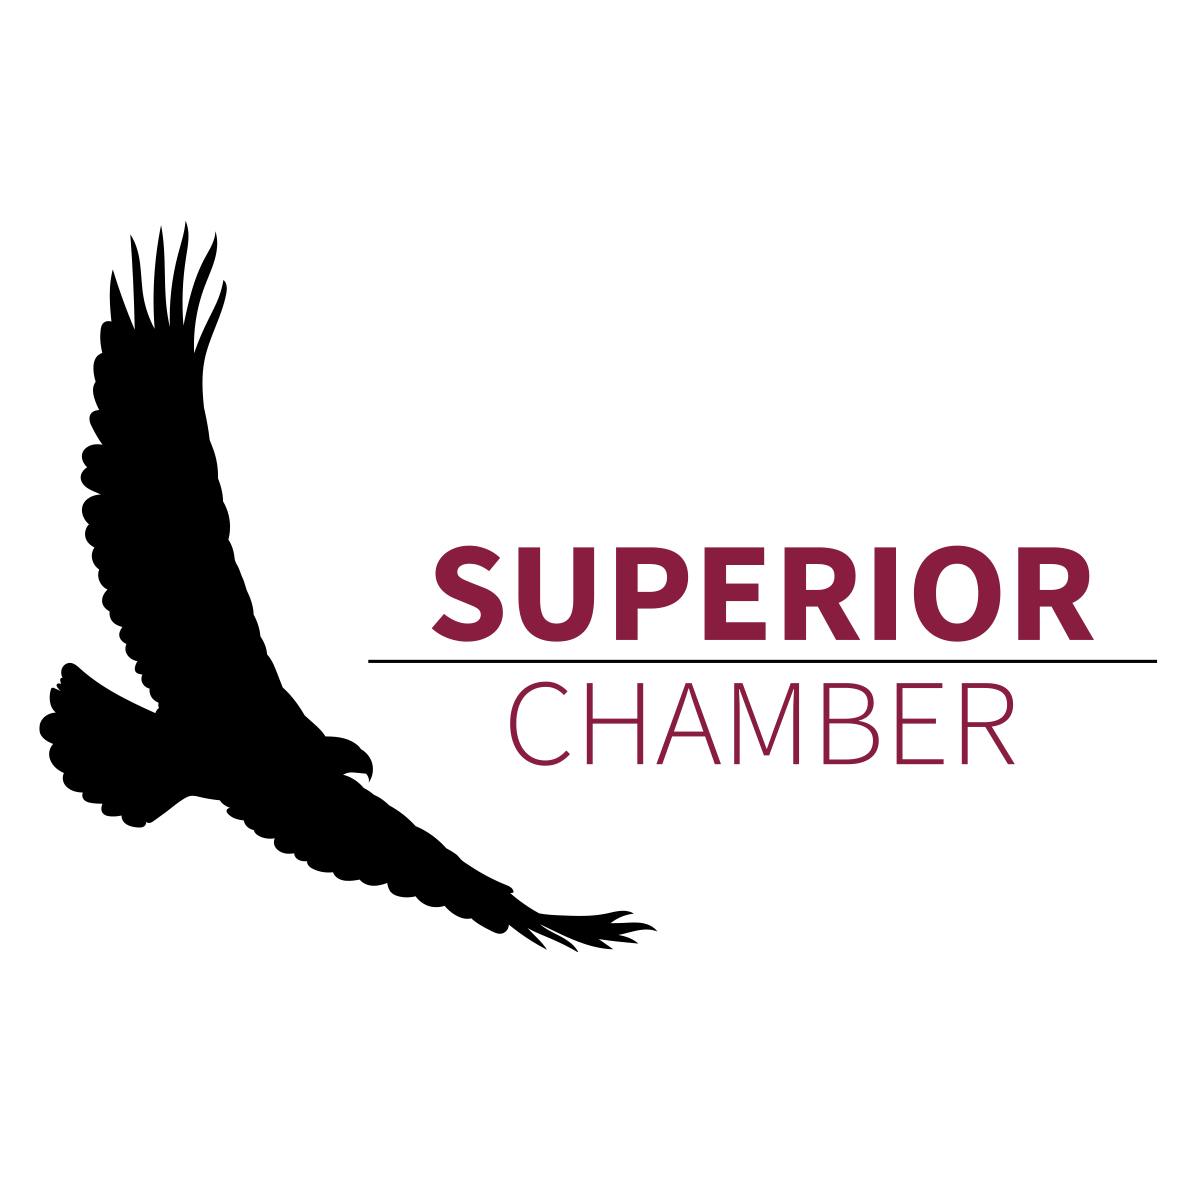 Team member, Superior Chamber of Commerce